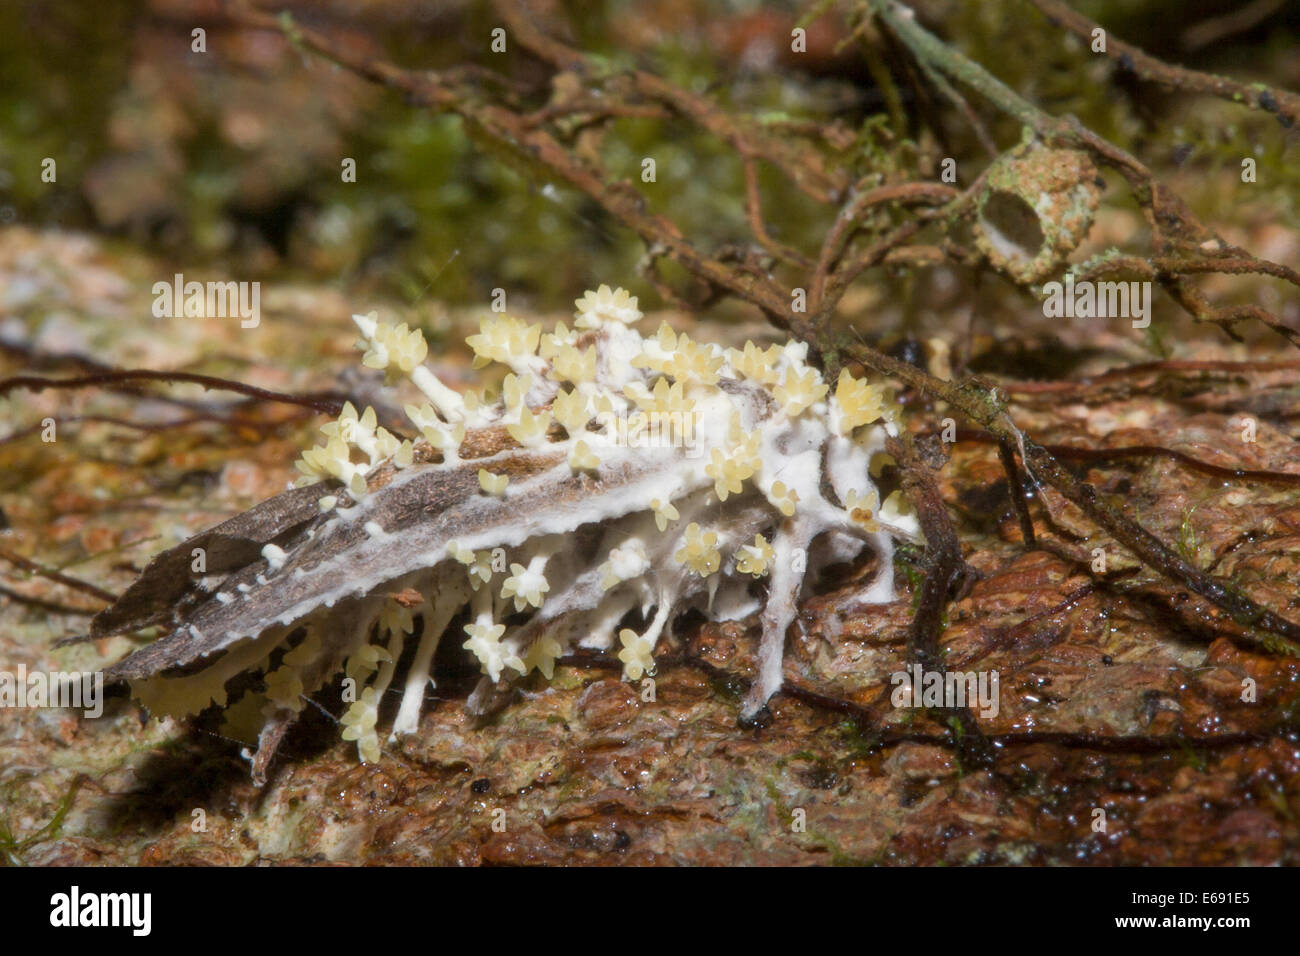 La tignola infettati con il devastante Cordyceps fungo. Corpi fruttiferi del fungo sono chiaramente visibili. Foto Stock